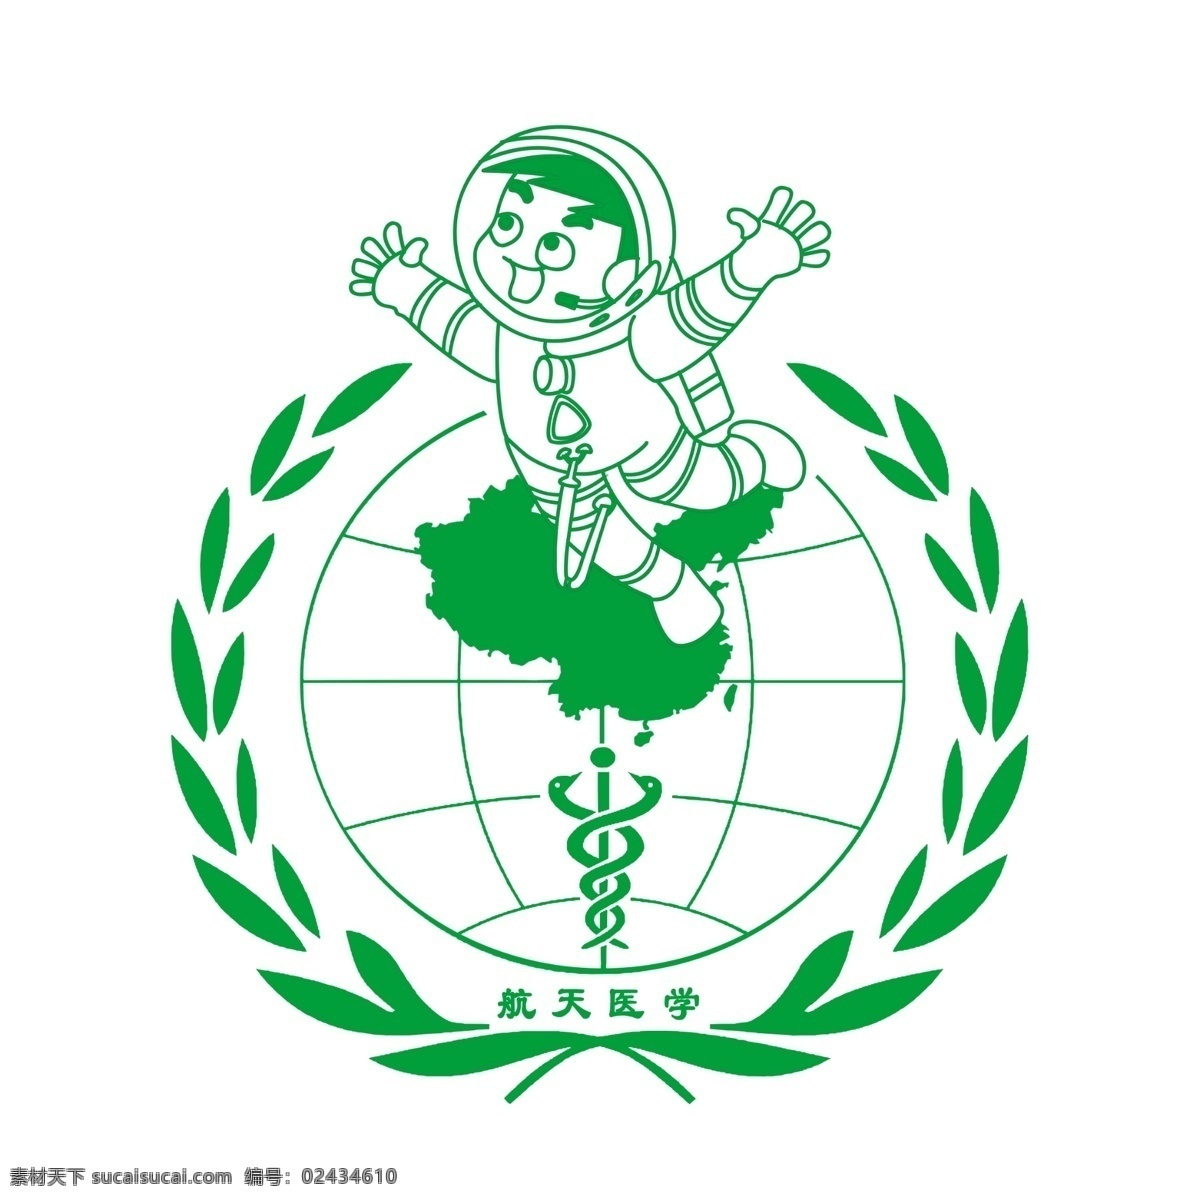 工程标志 航天 医学 慢性病 健康 工程 标志 绿色 宇航员 中国 麦穗 蛇 地球 标志设计 广告设计模板 源文件